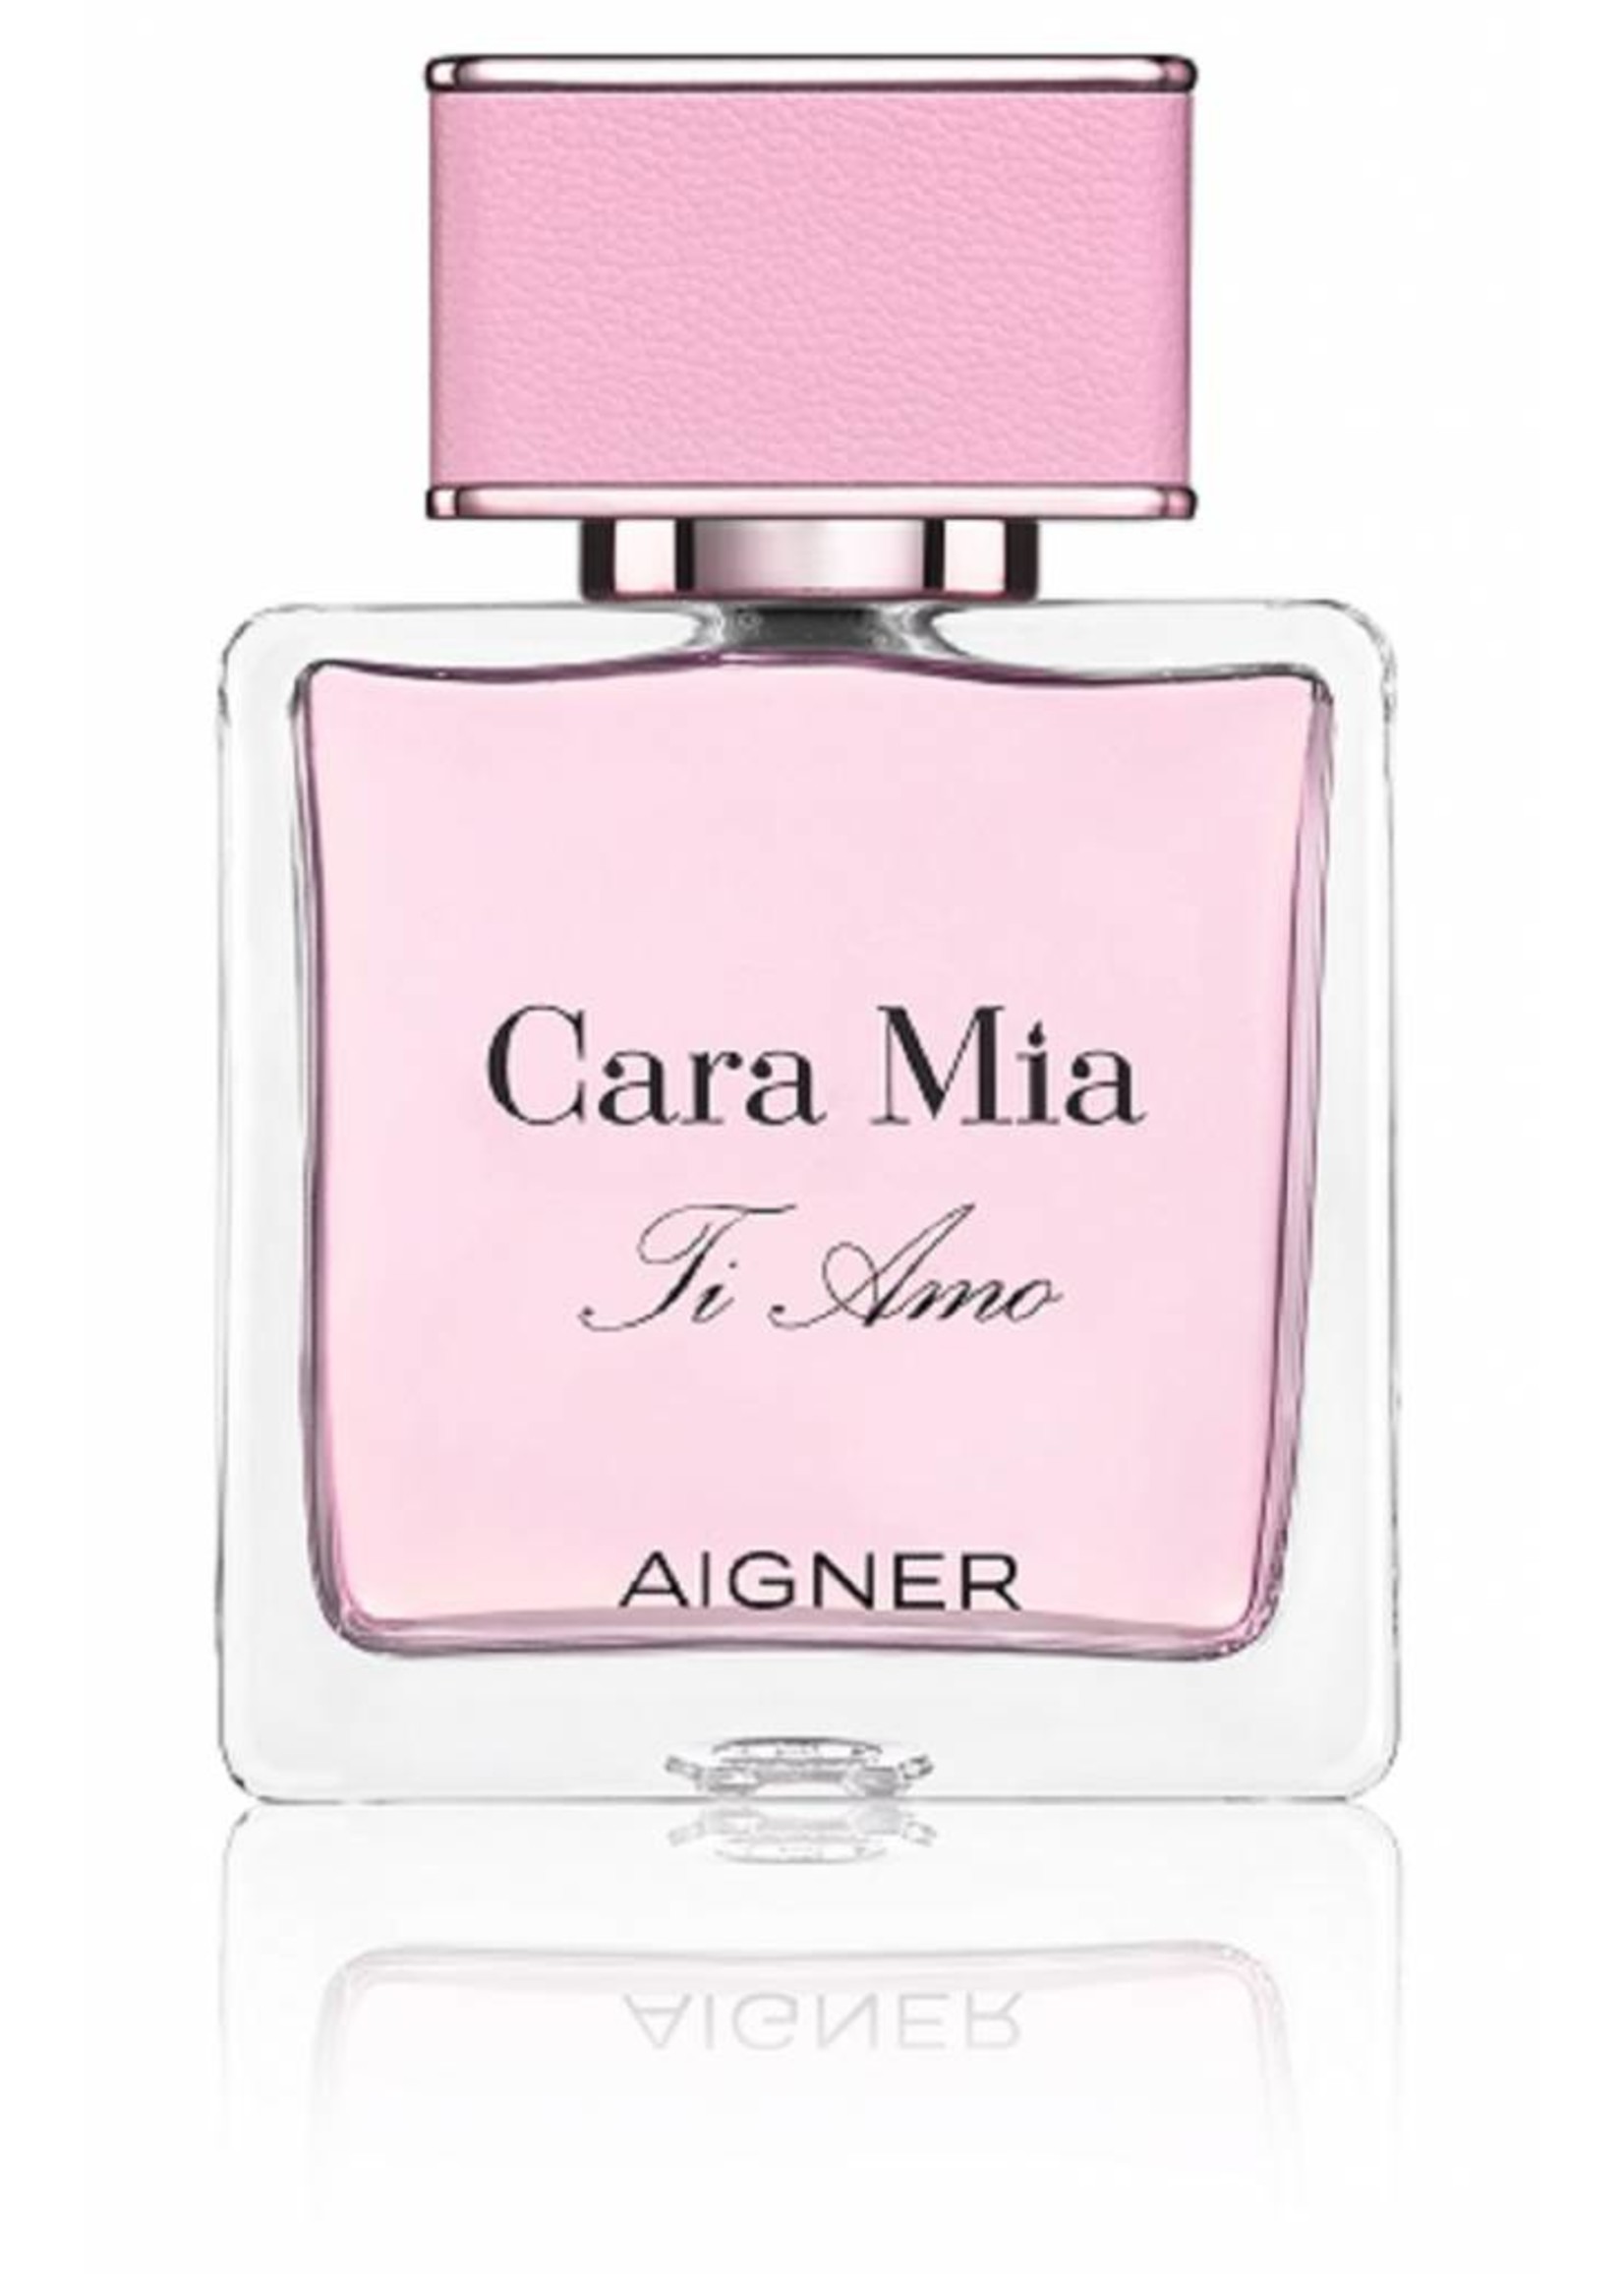 Aigner Cara Mia Ti Amo - Aigner - Women's Perfume